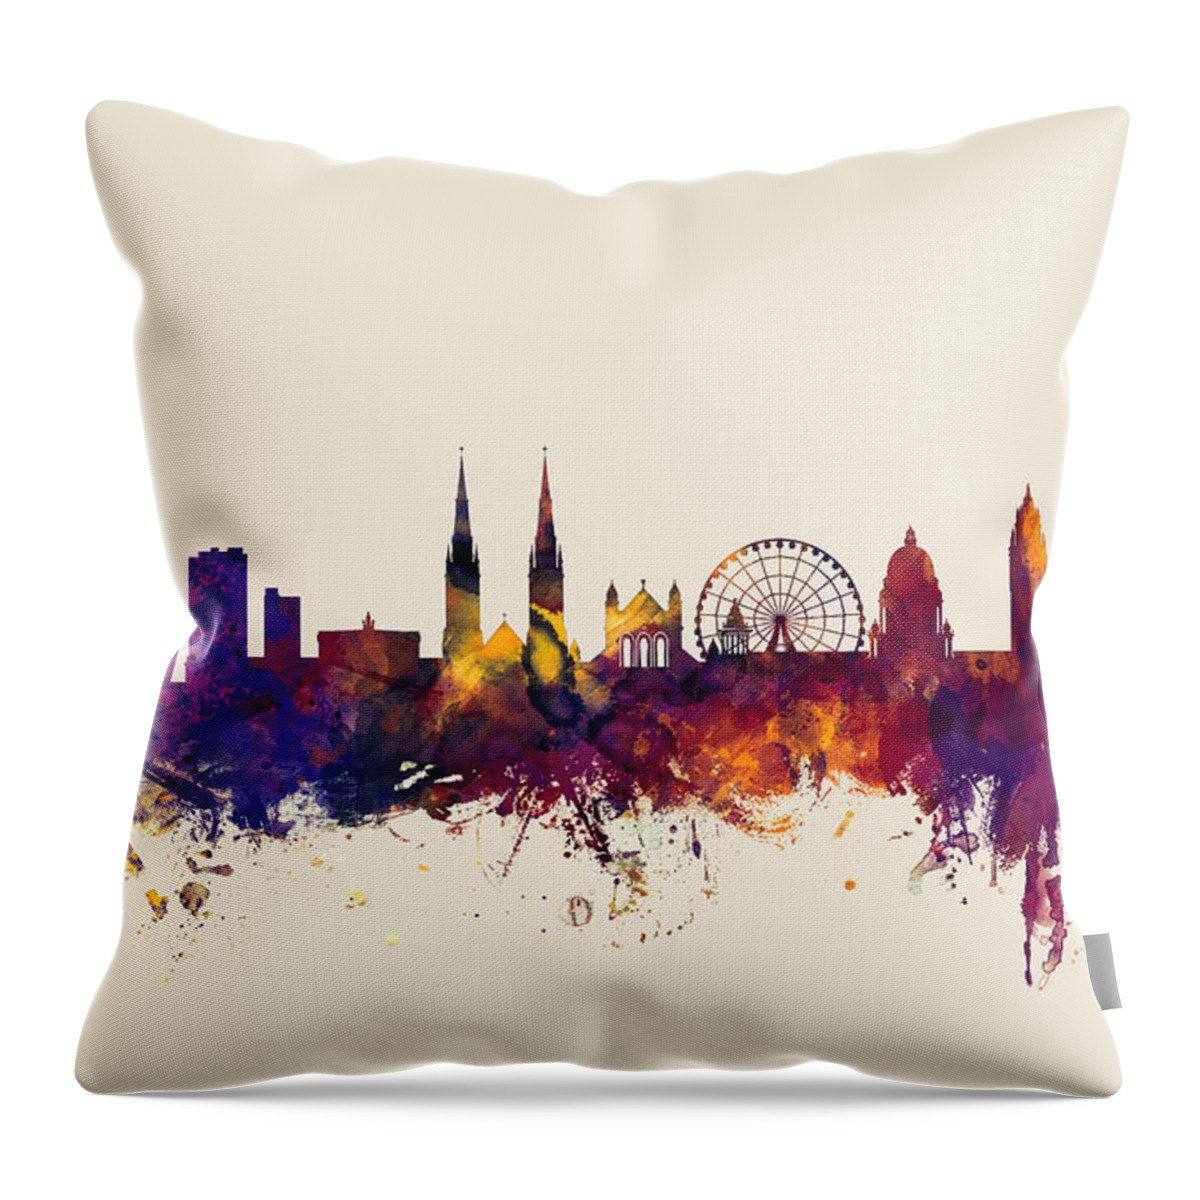 Belfast Throw Pillow featuring the digital art Belfast Northern Ireland Skyline #3 by Michael Tompsett